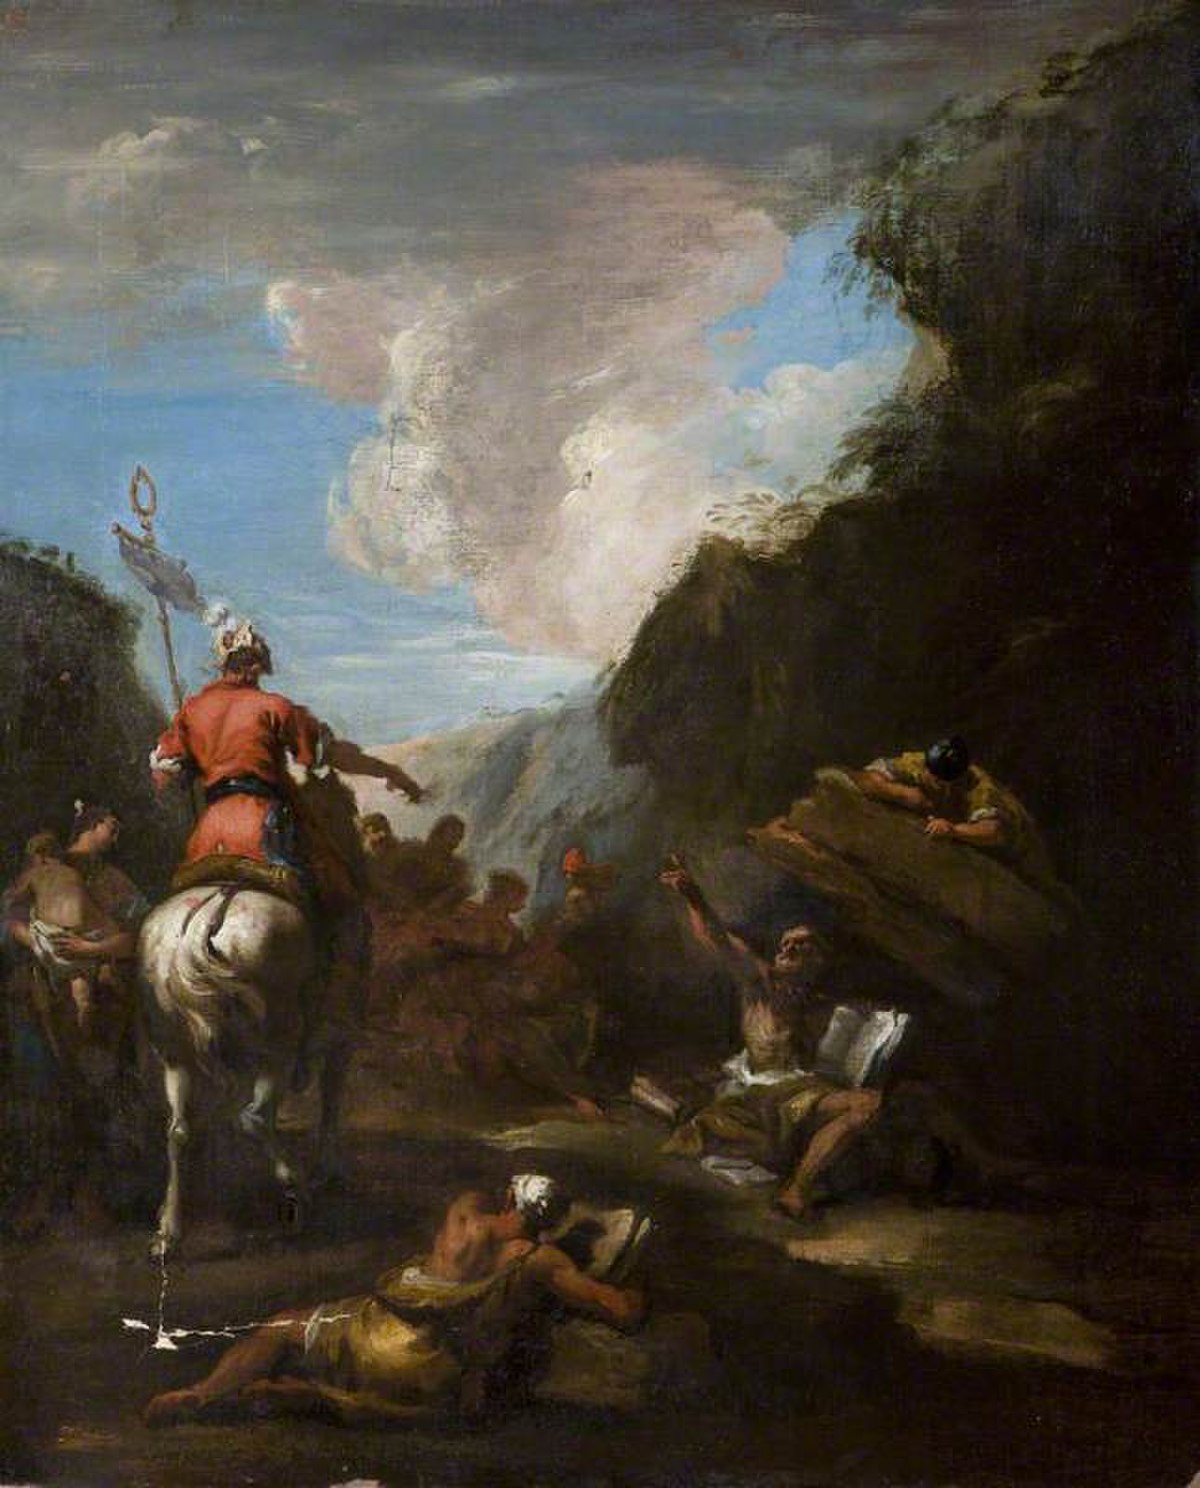 Syracuse rebels against Rome